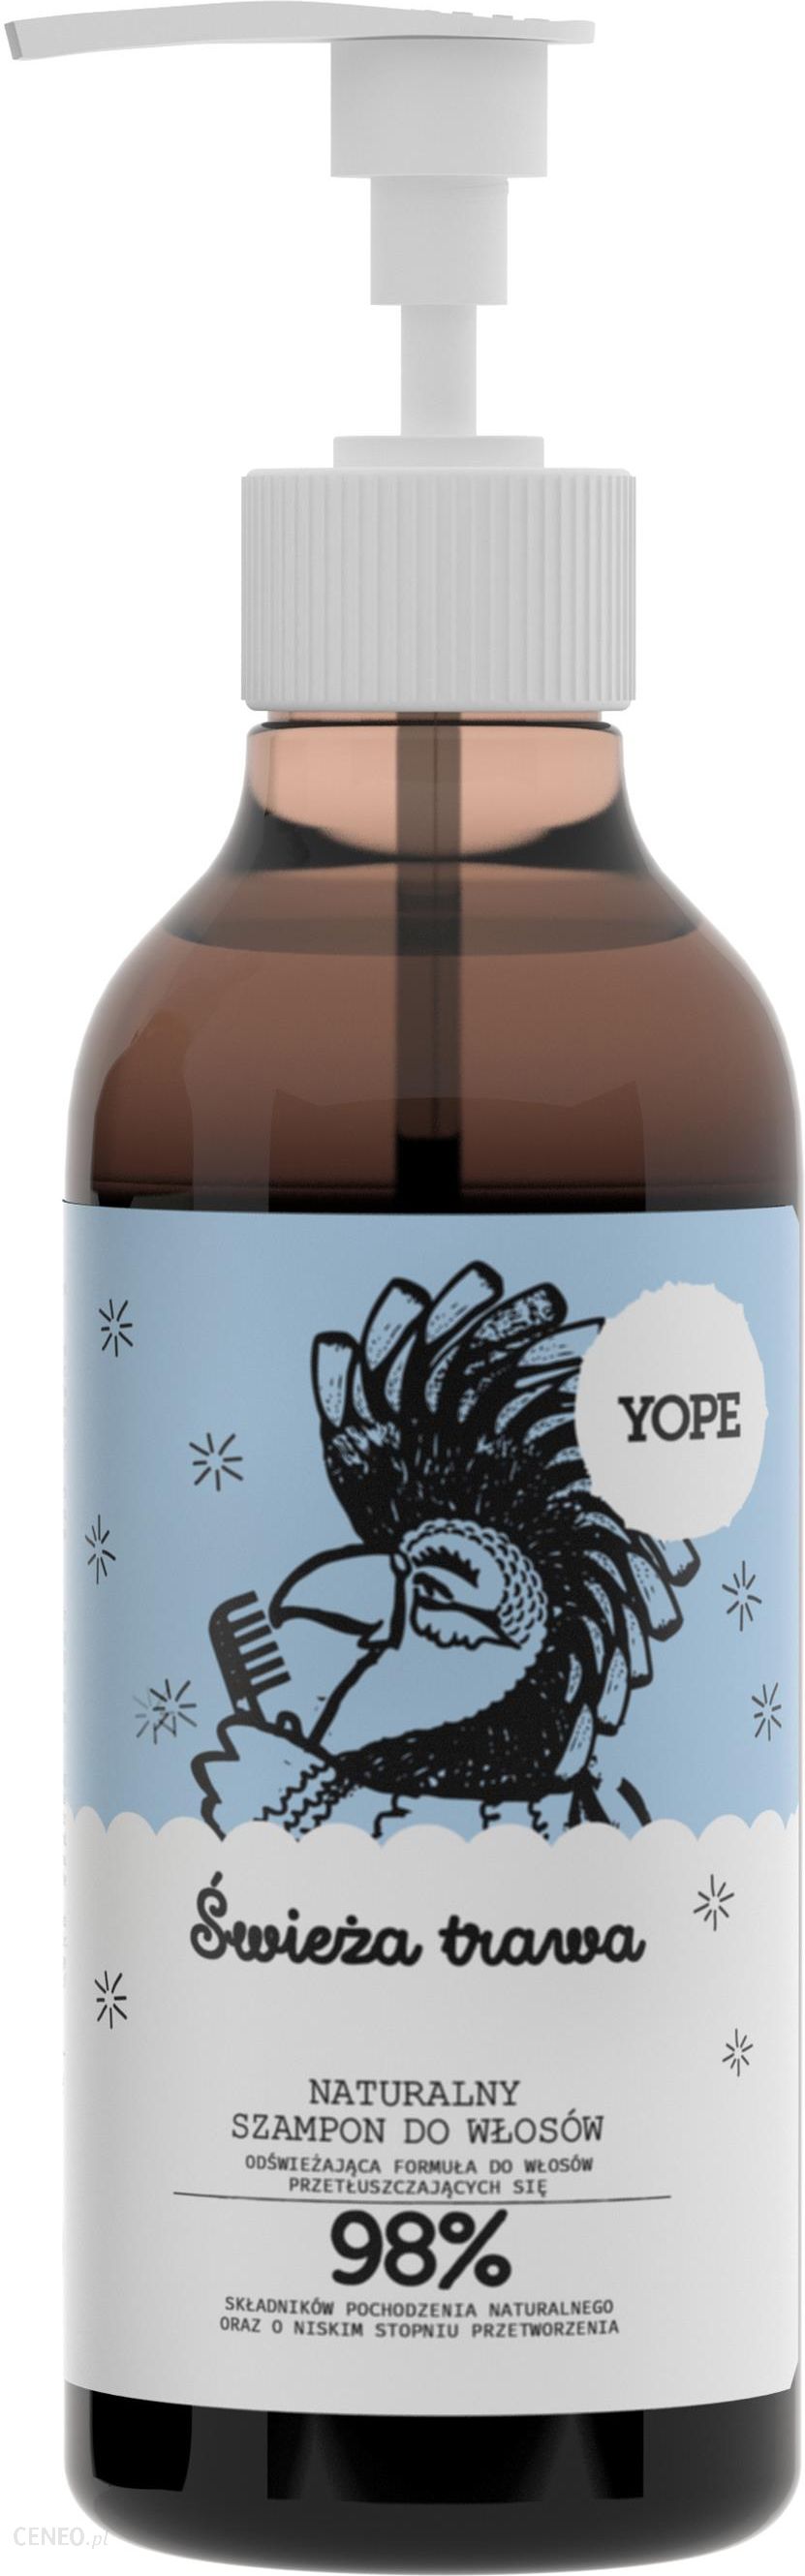 yope naturalny szampon świeża trawa 300ml